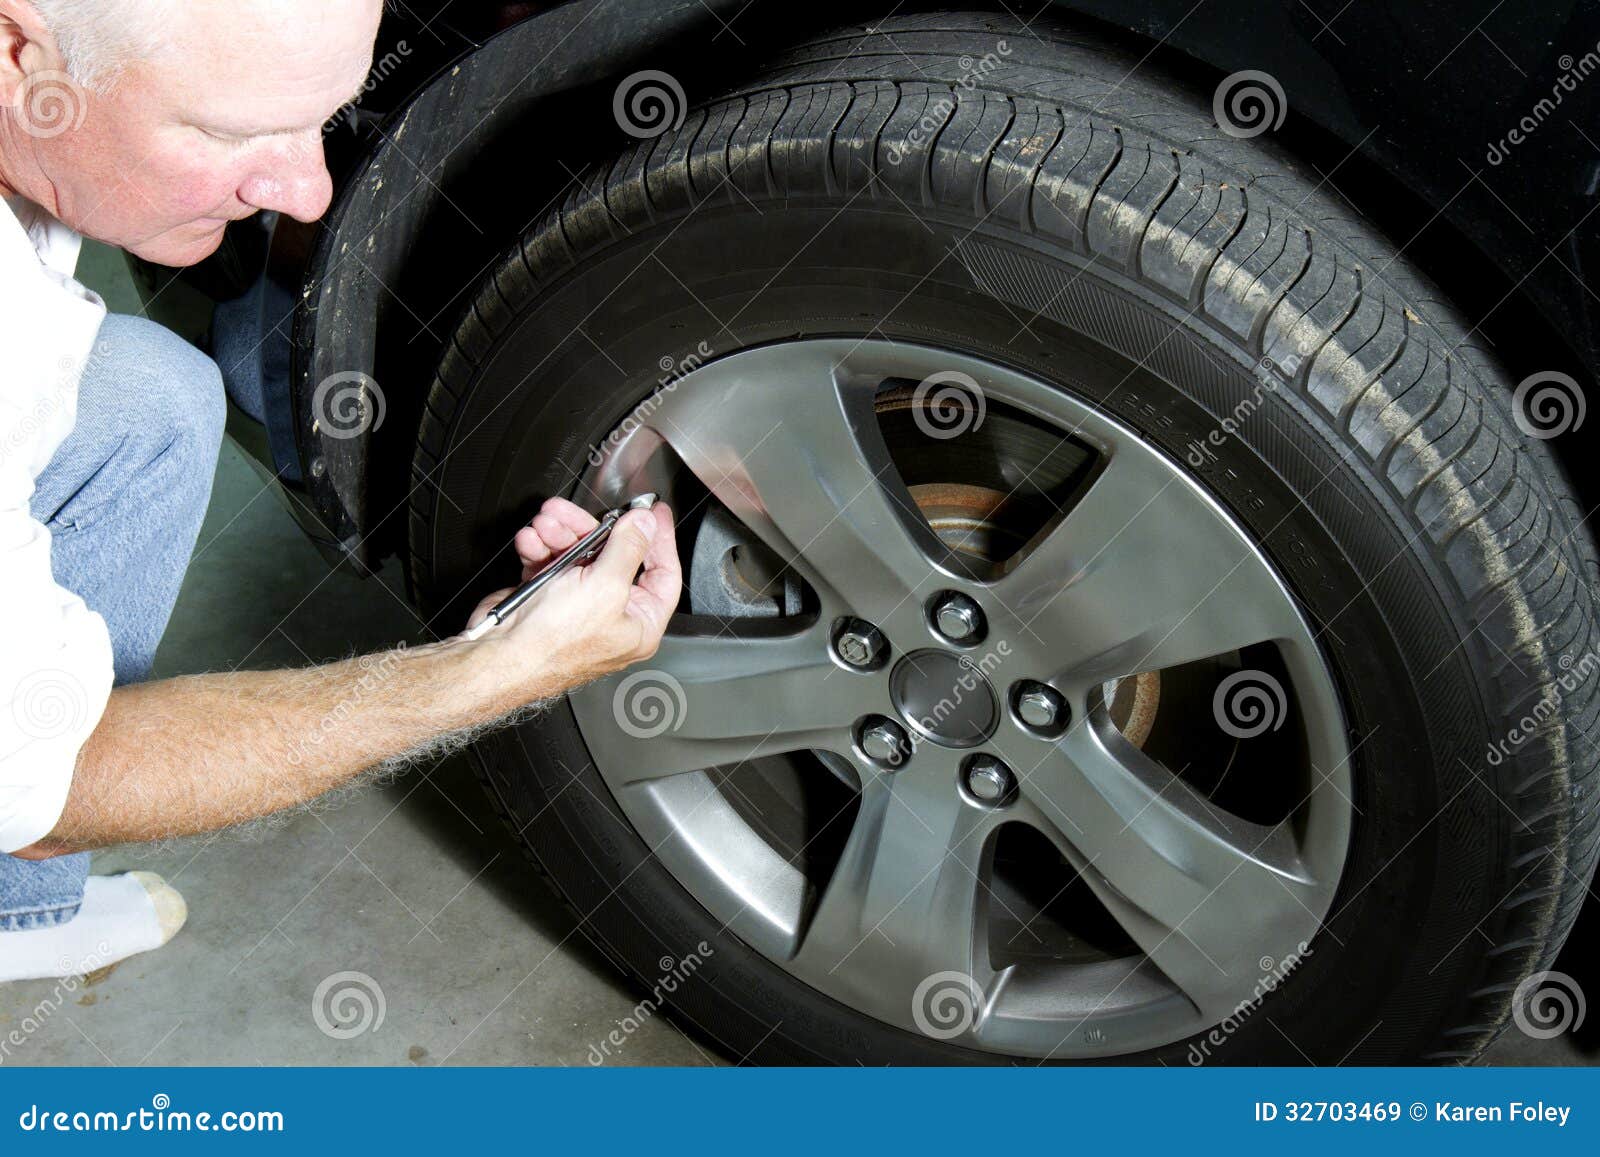 checking tire pressure man air auto 32703469